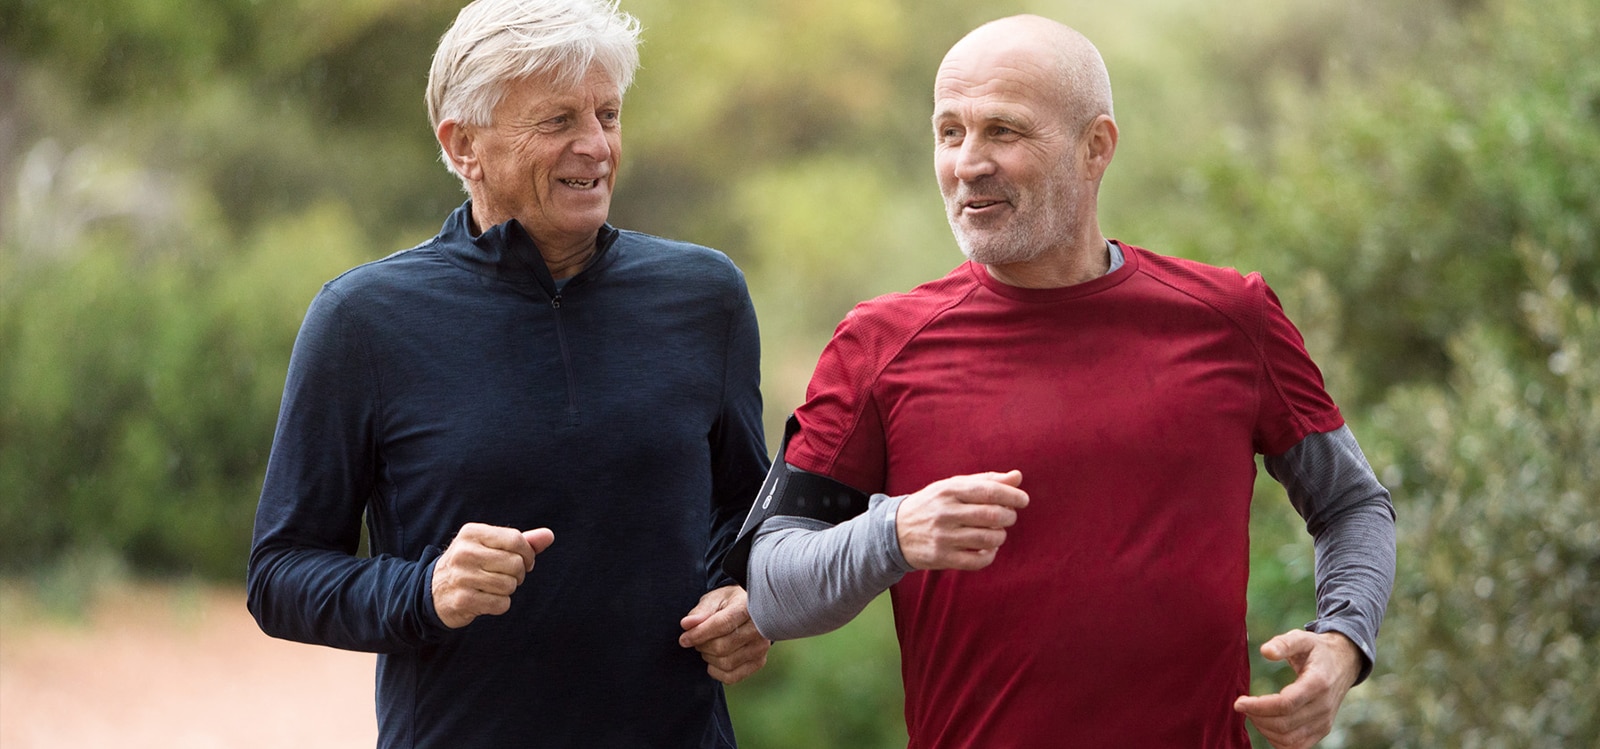 Dva muškarca od 50 do 60 godina trče